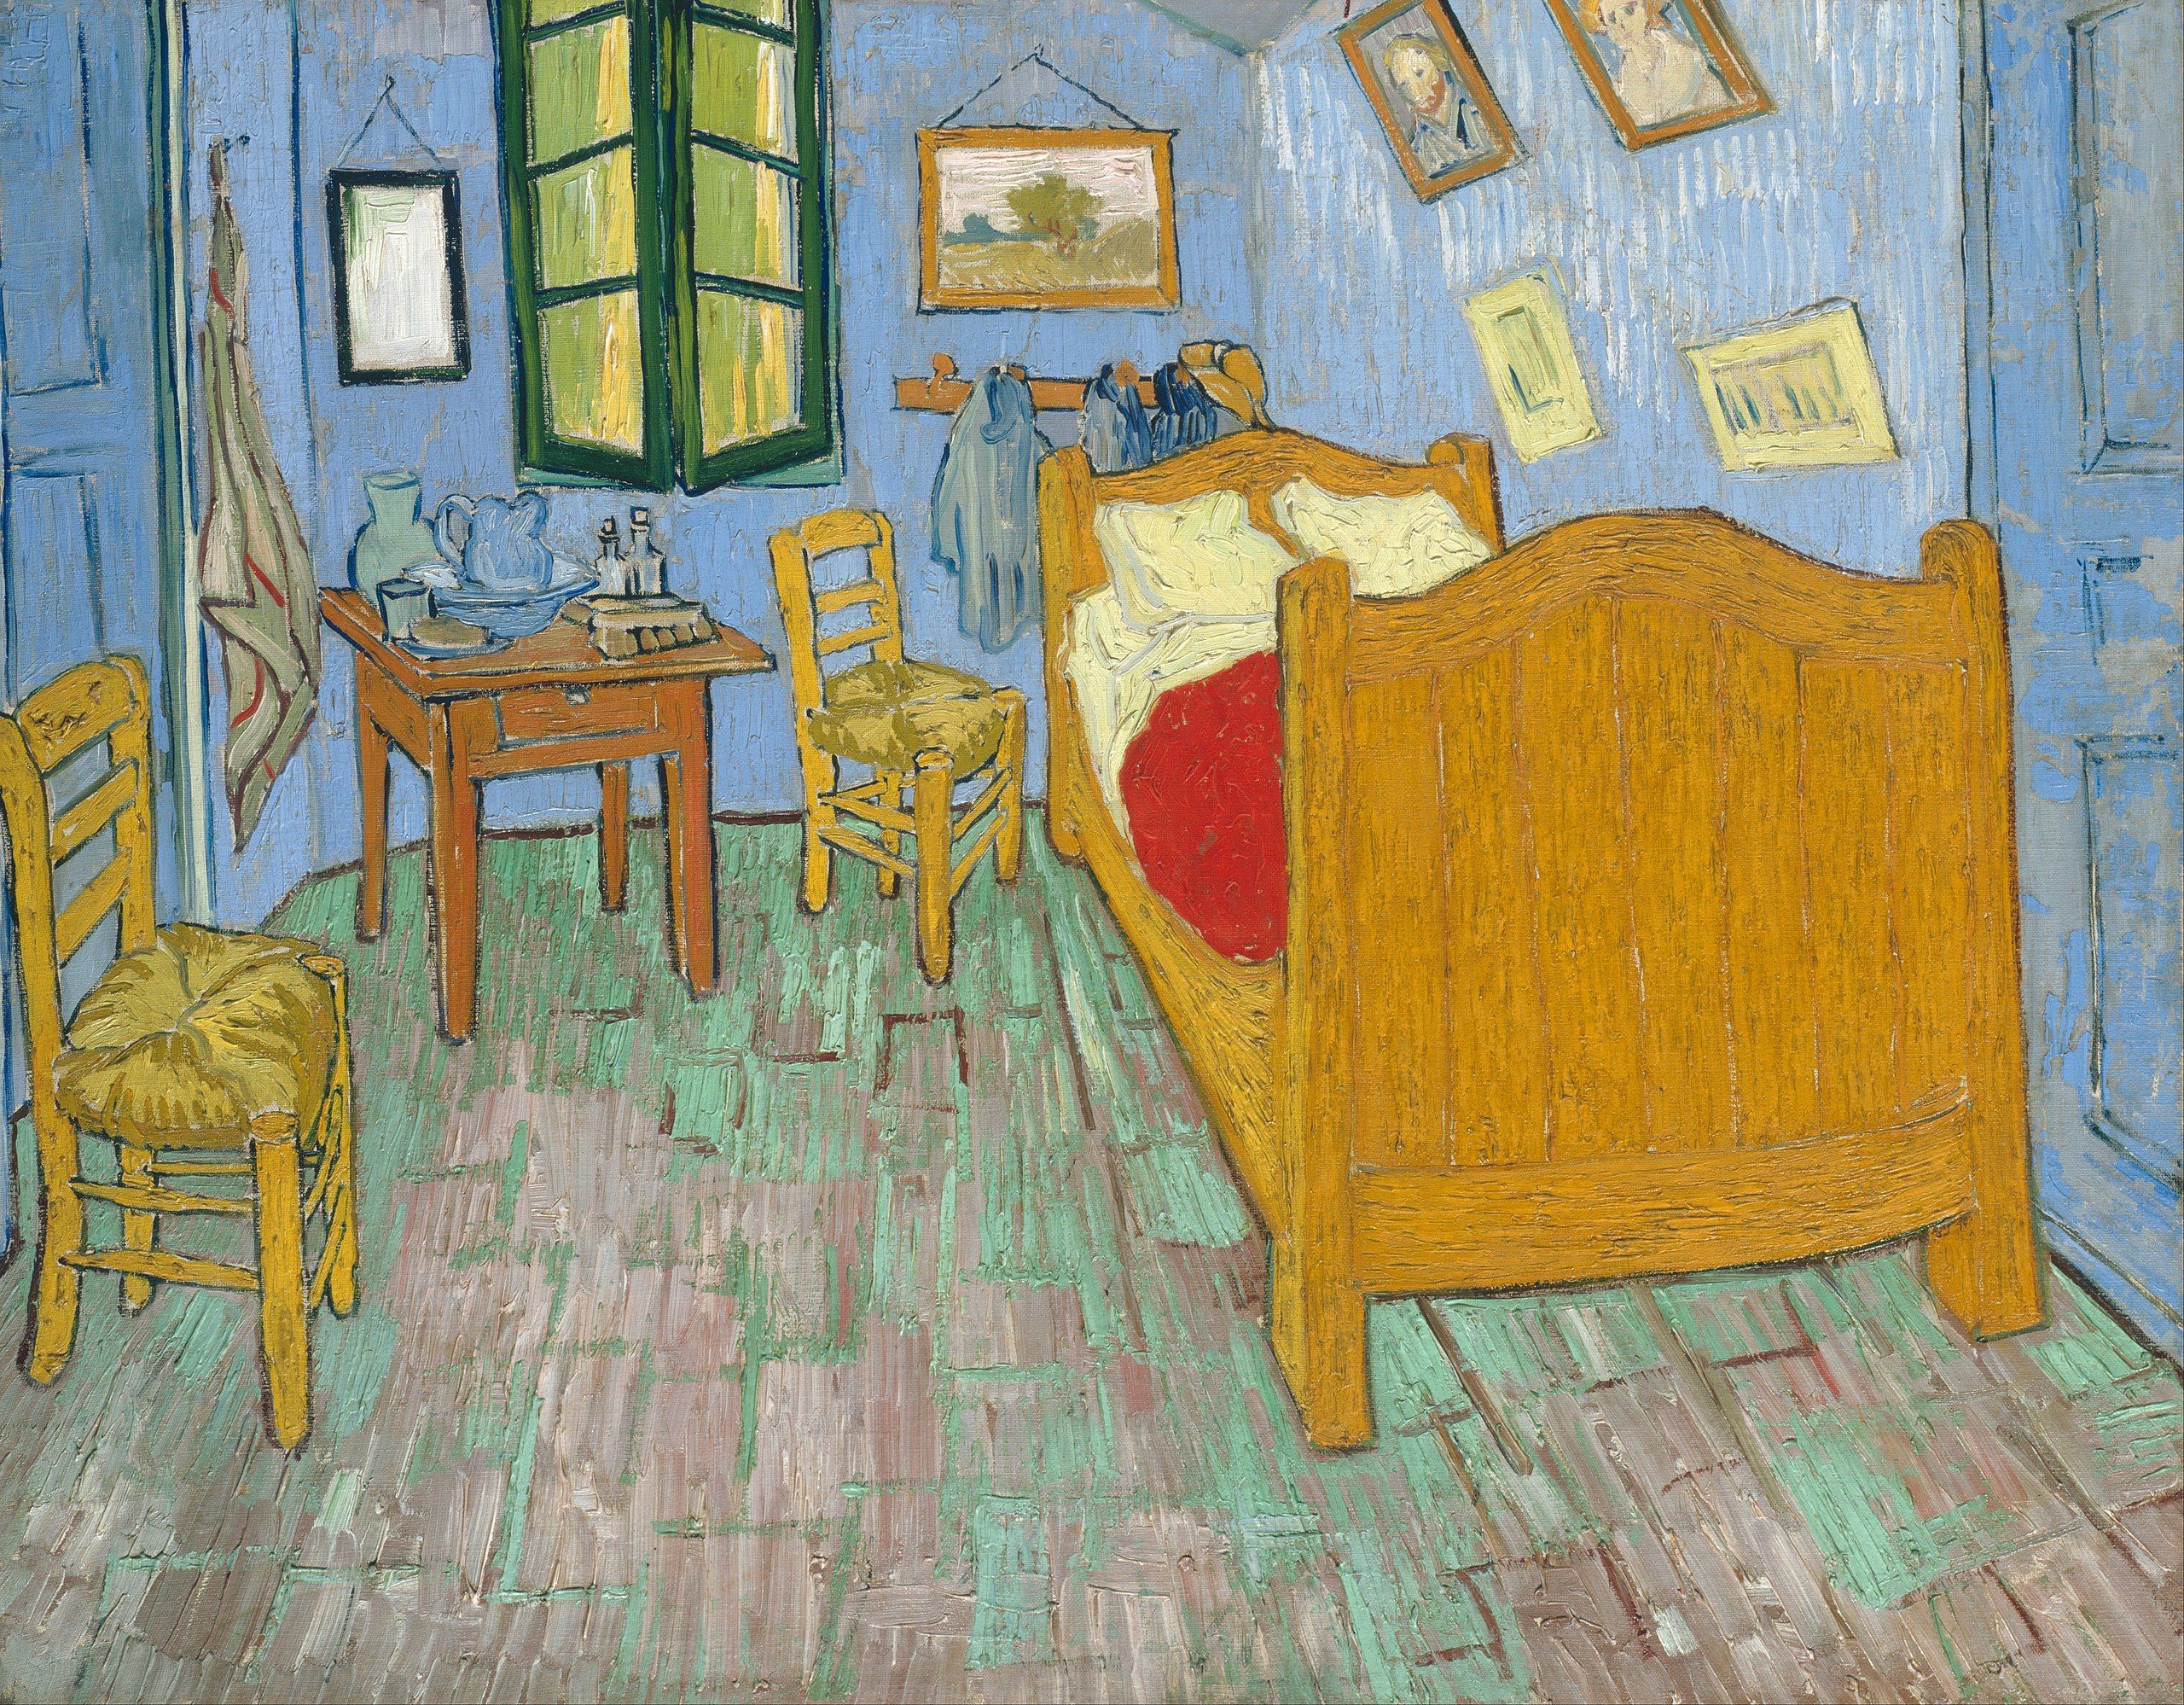 La chambre de Van Gogh - Art Institute of Chicago Wikicommons